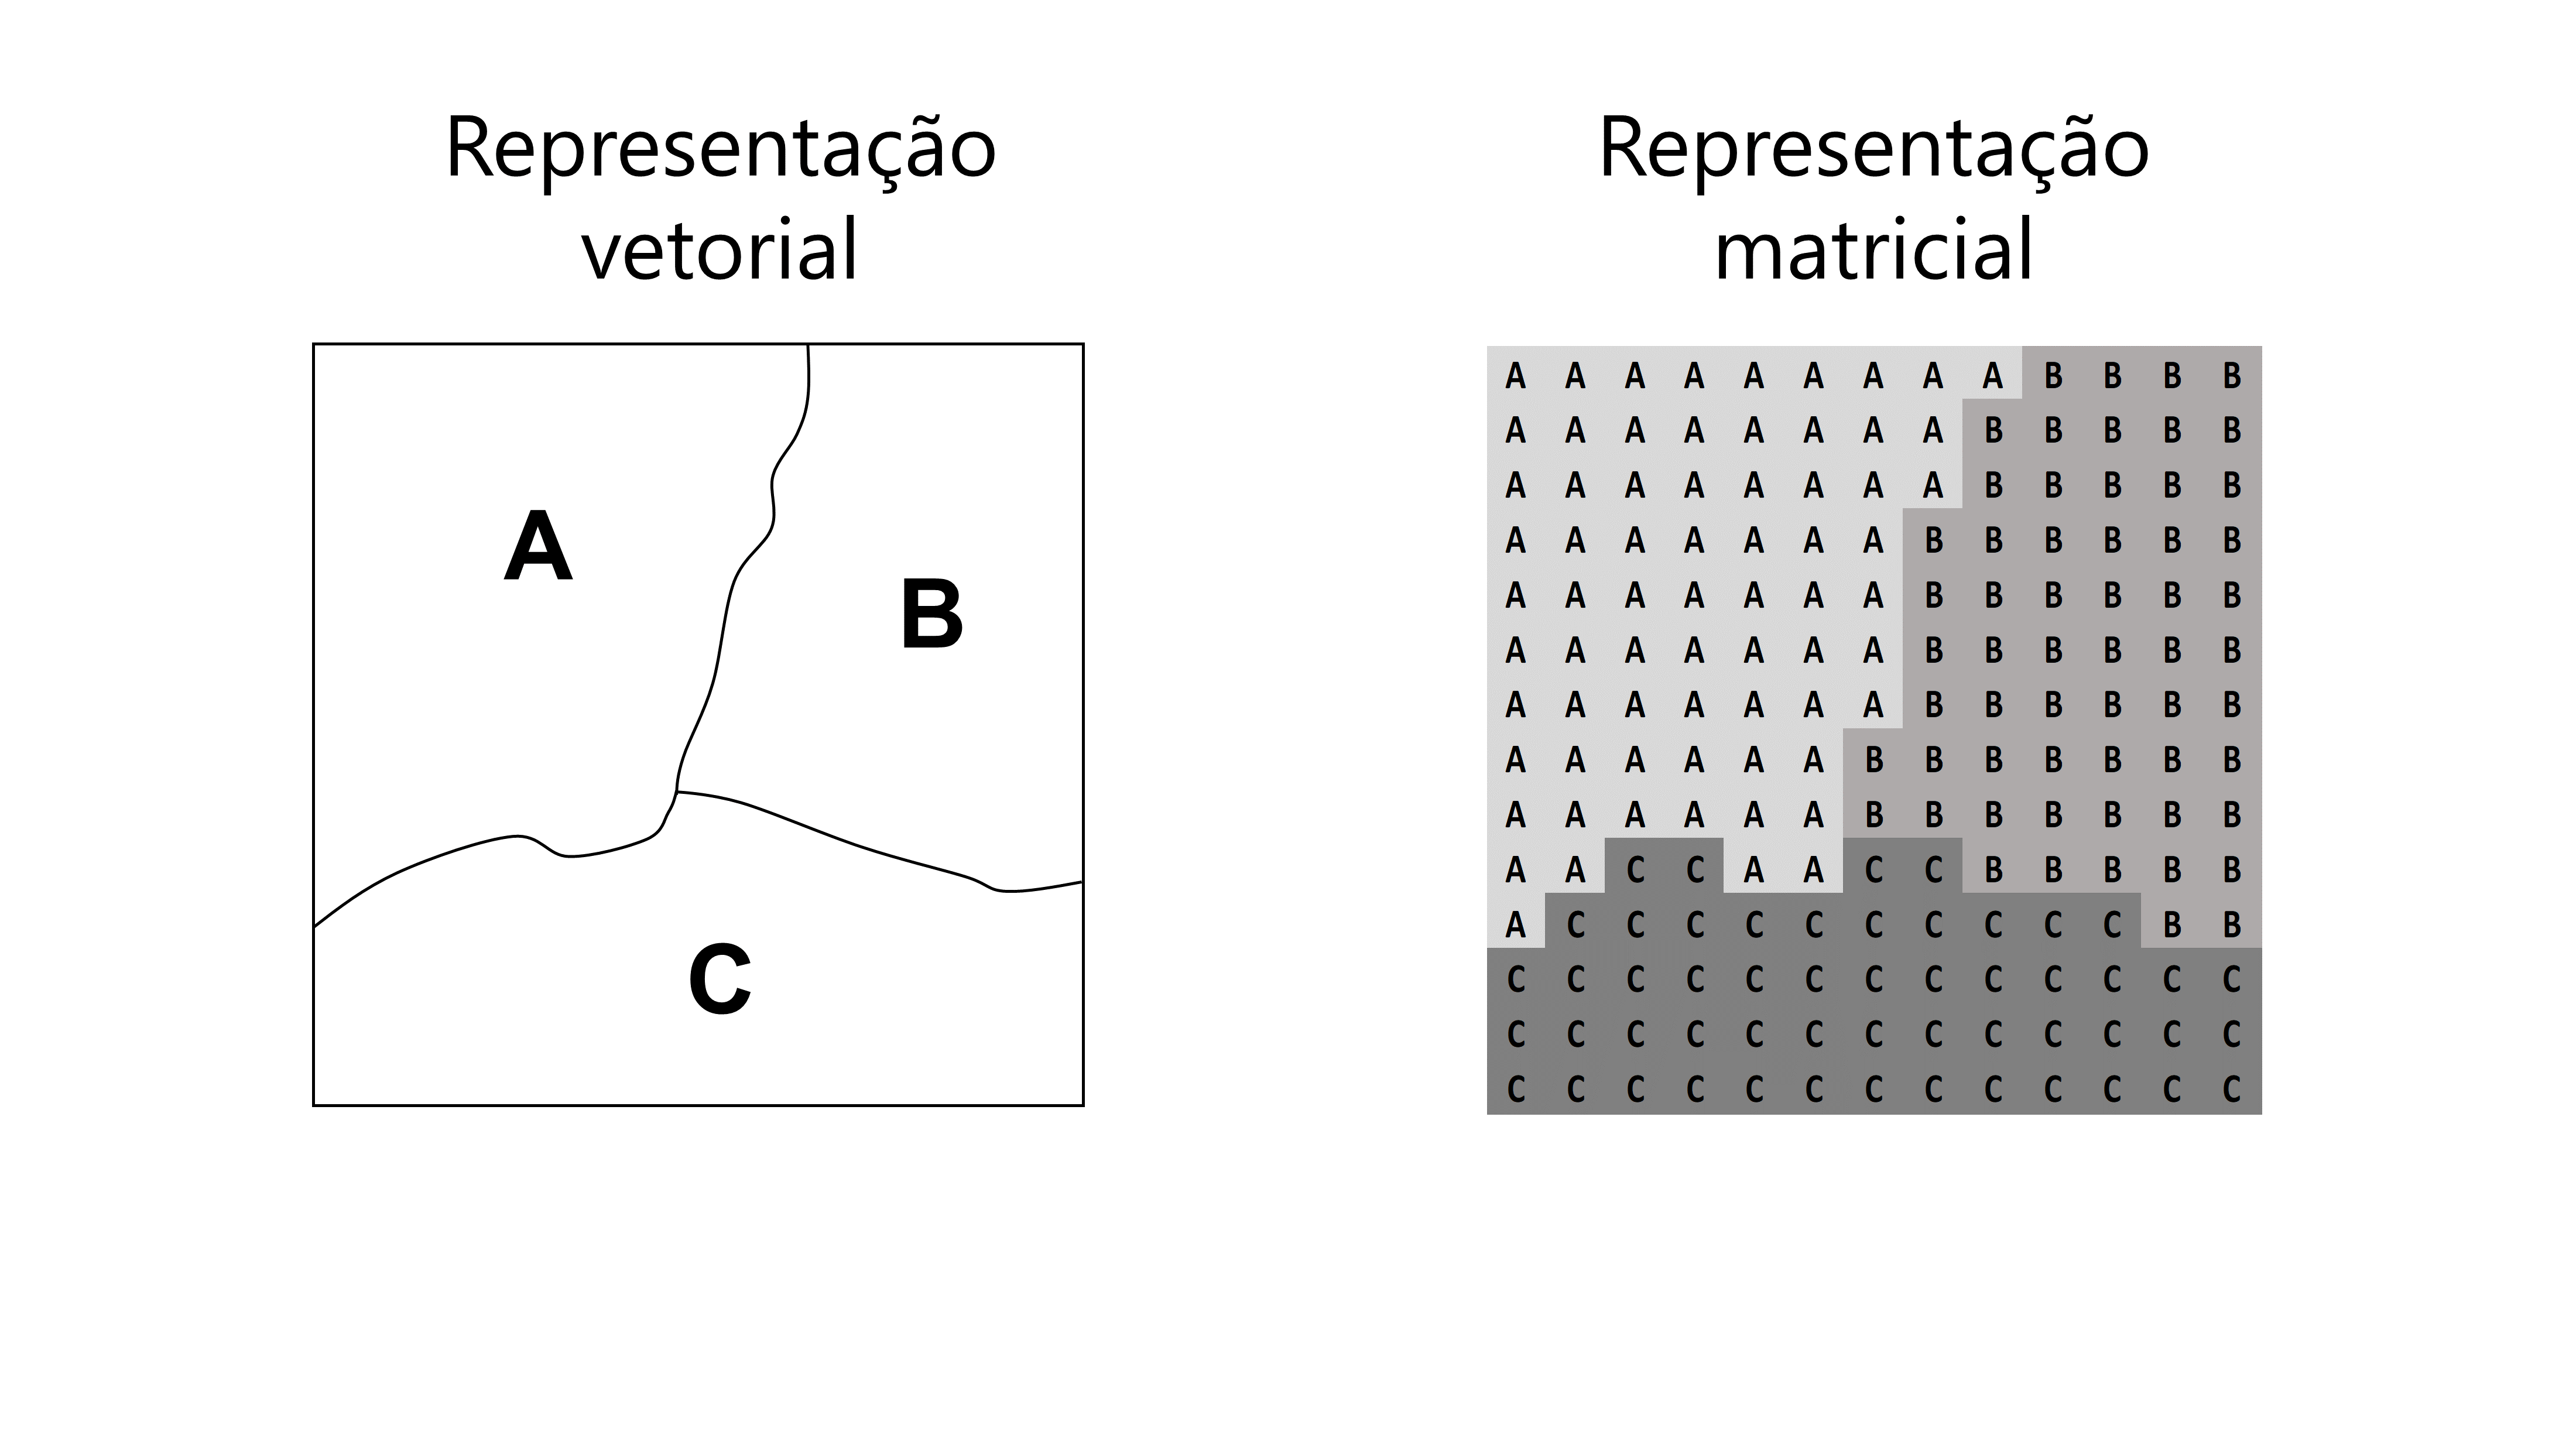 Diferenças entre as representações vetorial e matricial